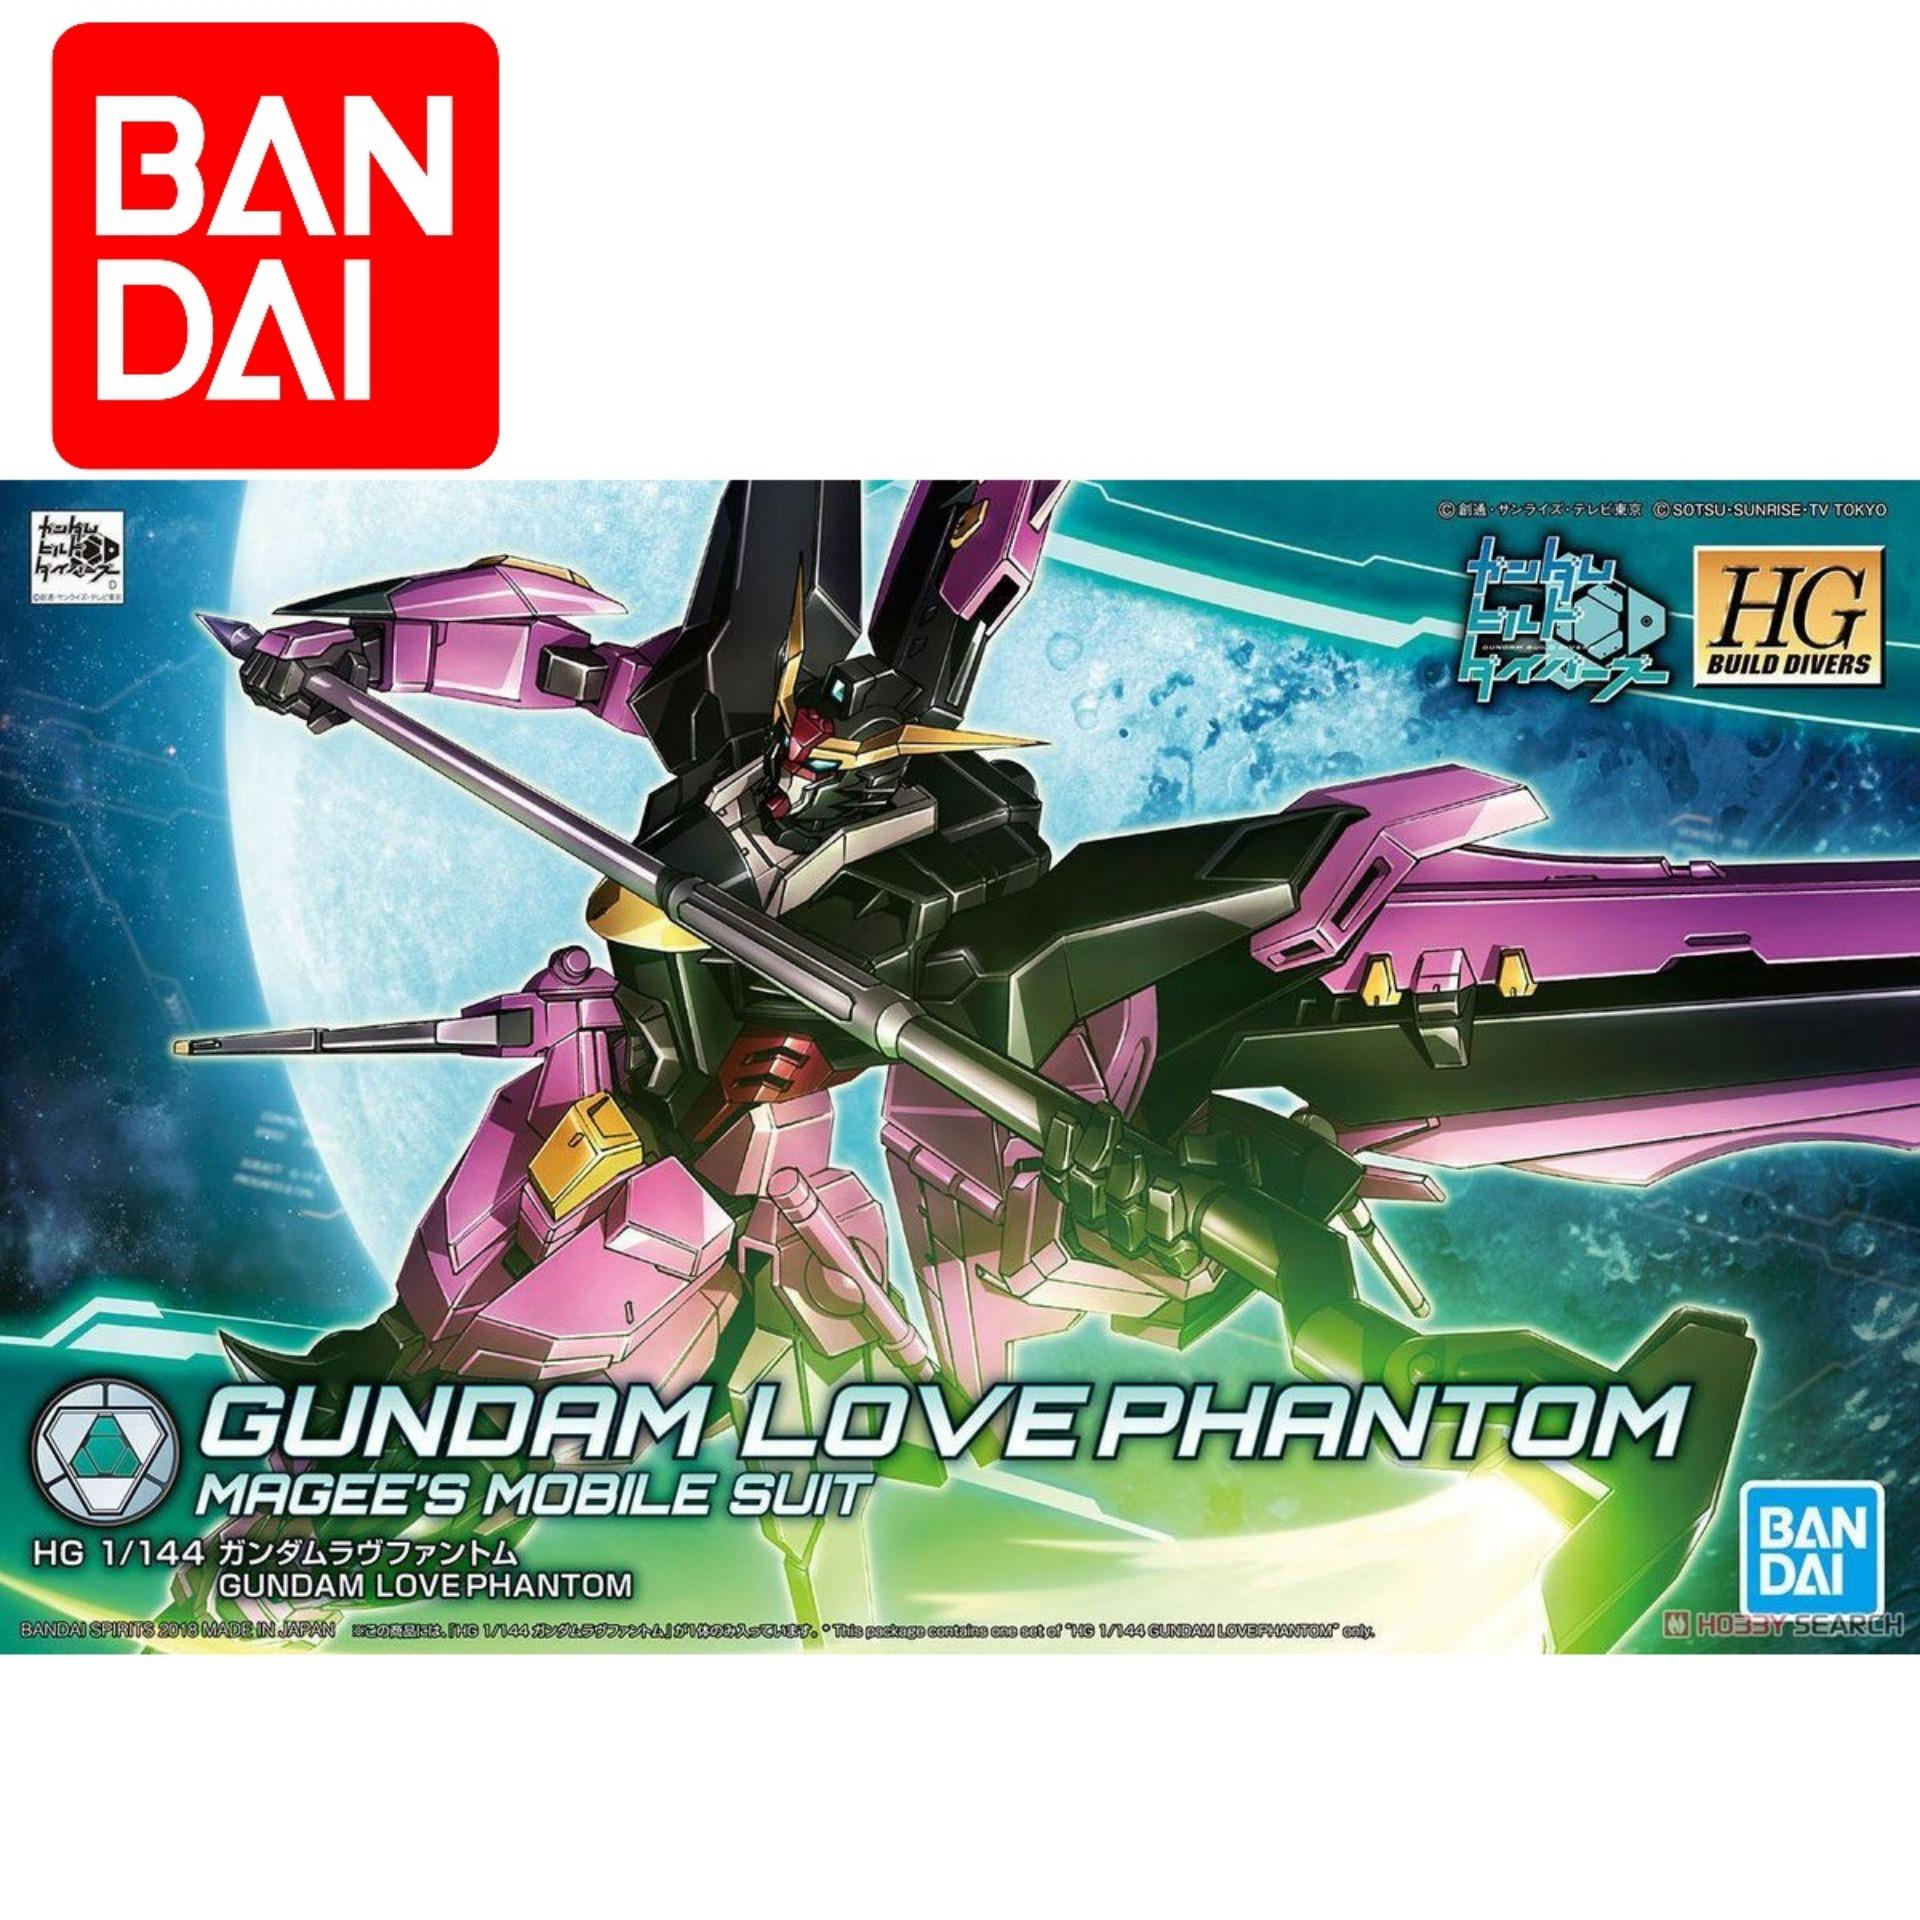 Mô hình vũ khí Gundam HG BD R Veetwo Weapons Bandai chính hãng giá rẻ